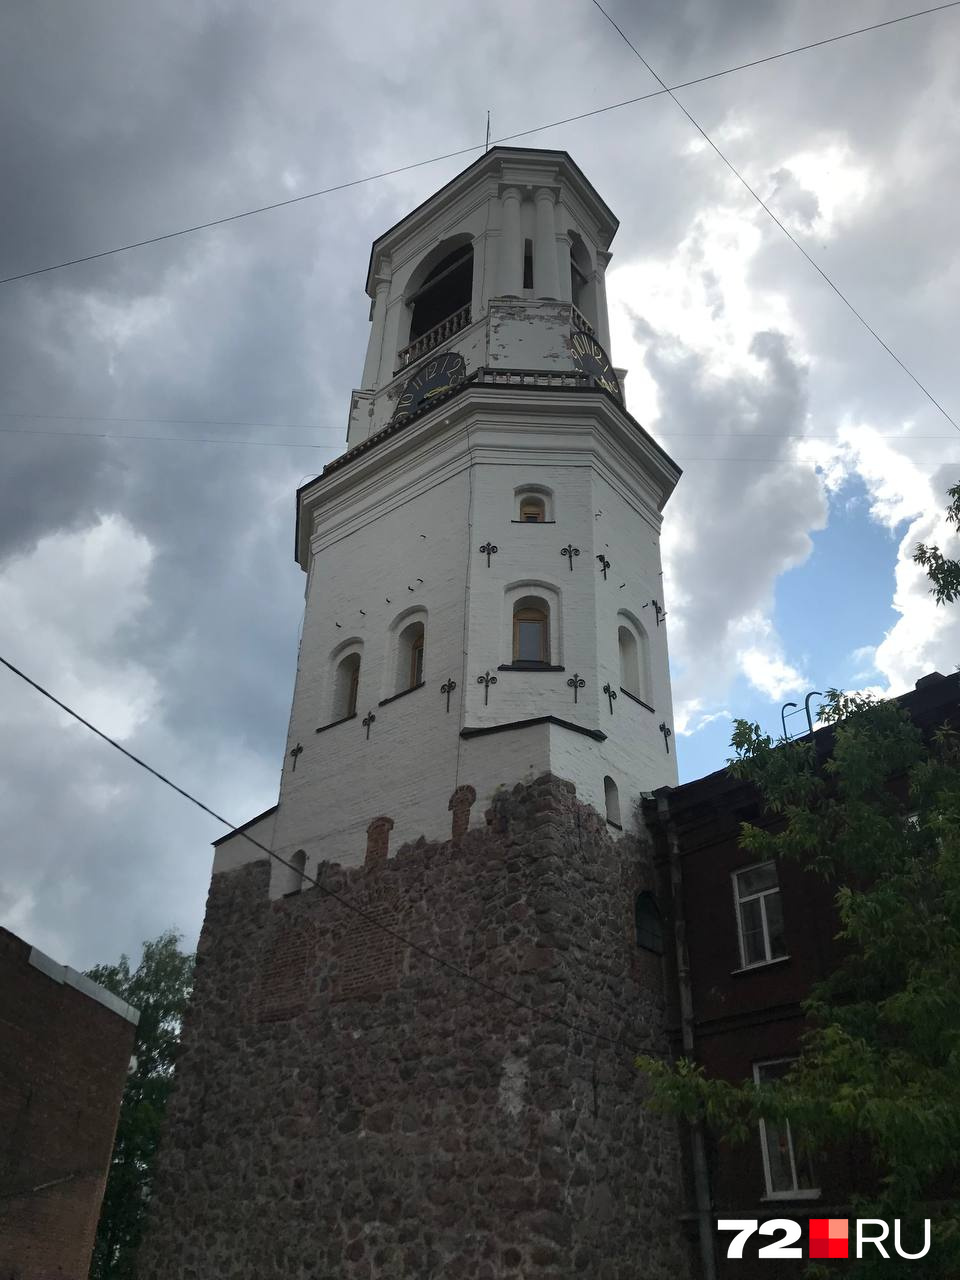 Первая достопримечательность — Часовая башня. Ее построили в конце XV века! Пару лет назад ее отреставрировали